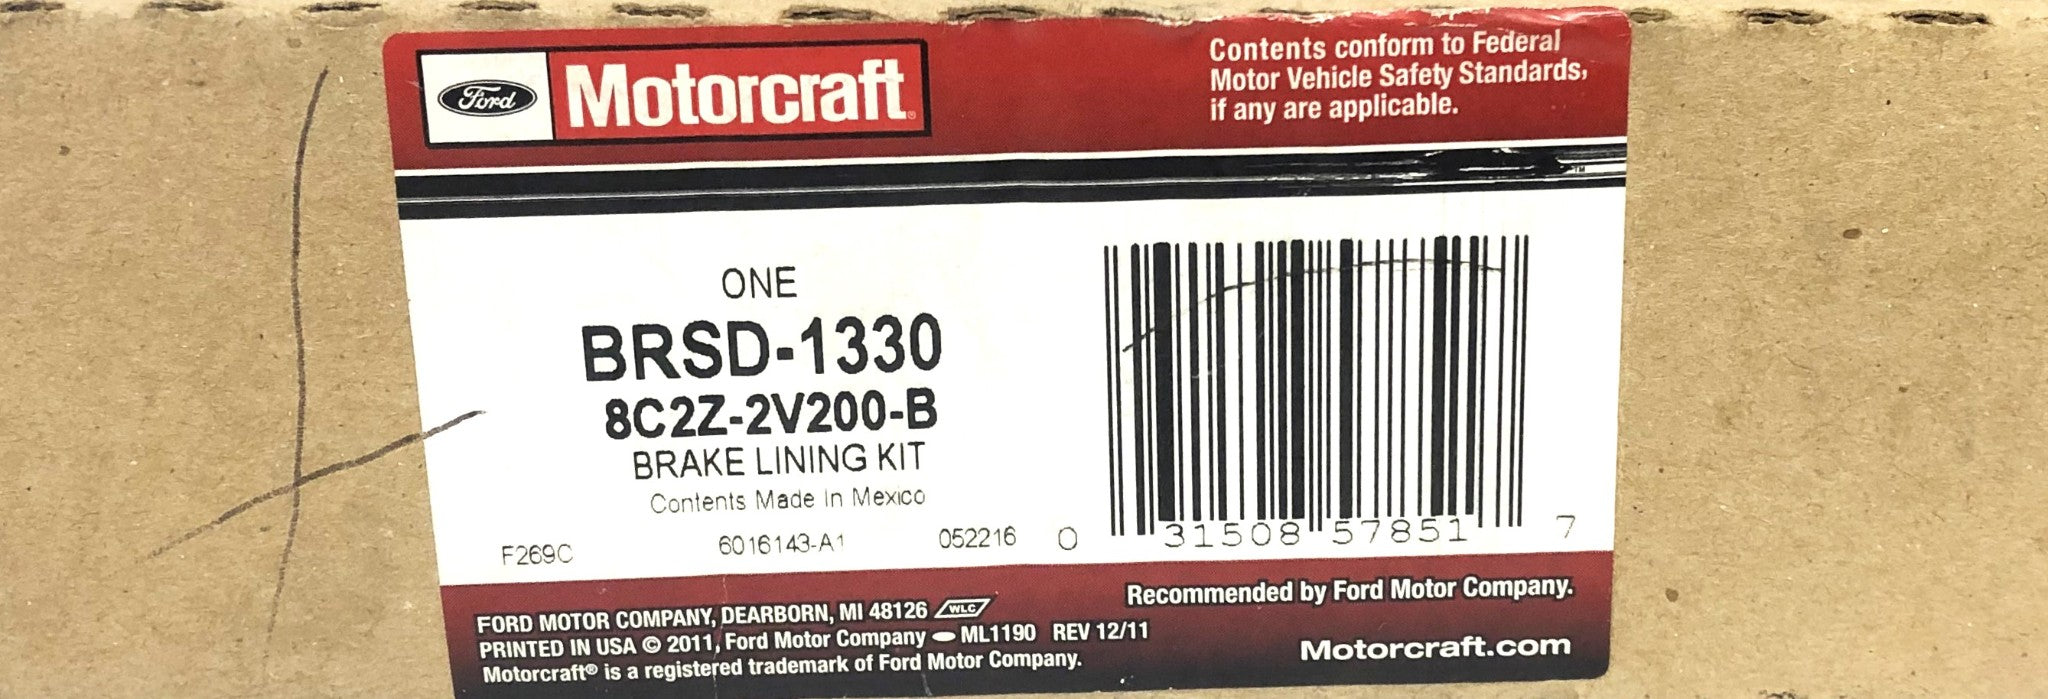 Ford Motorcraft Brake Lining Kit BRSD-1330 (8C2Z-2V200-B) NOS